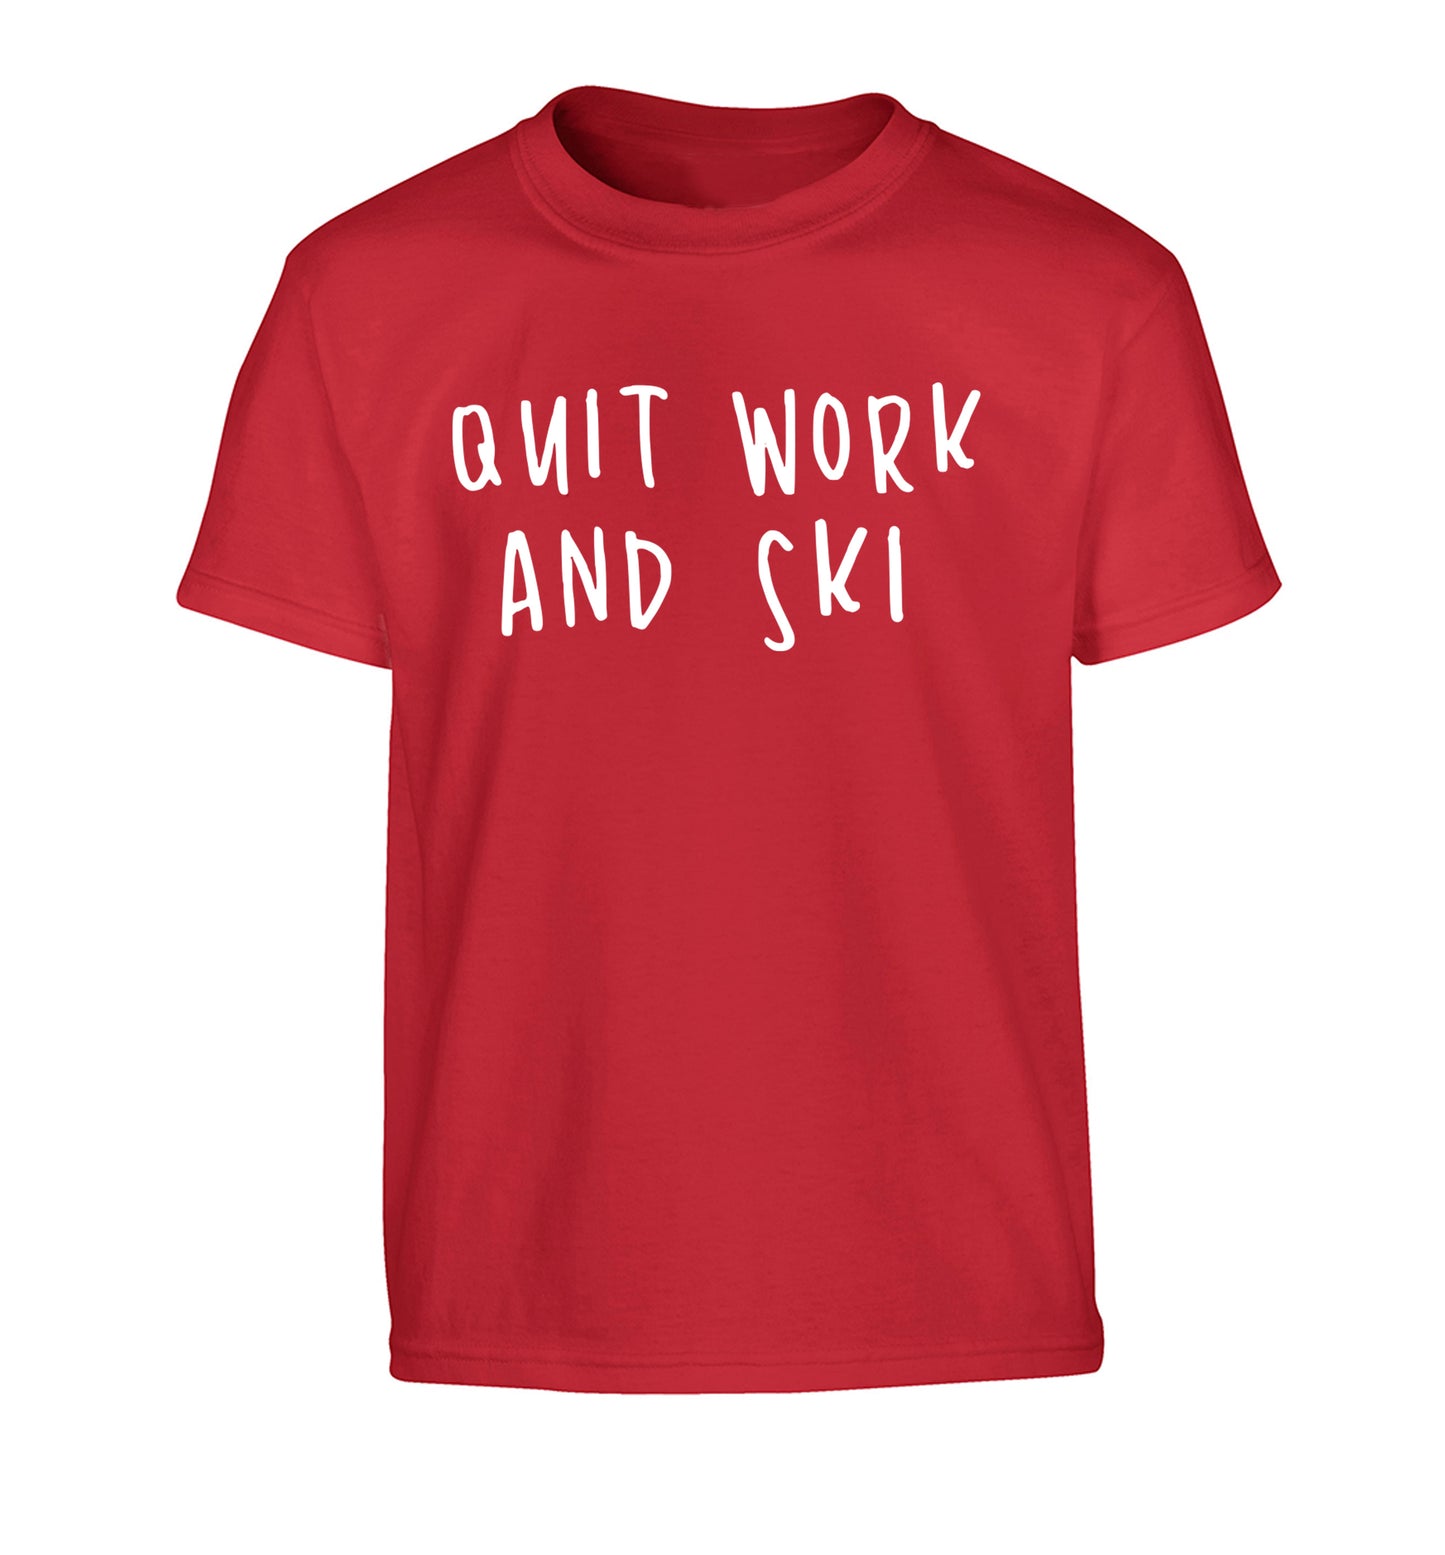 Quit work and ski Children's red Tshirt 12-14 Years